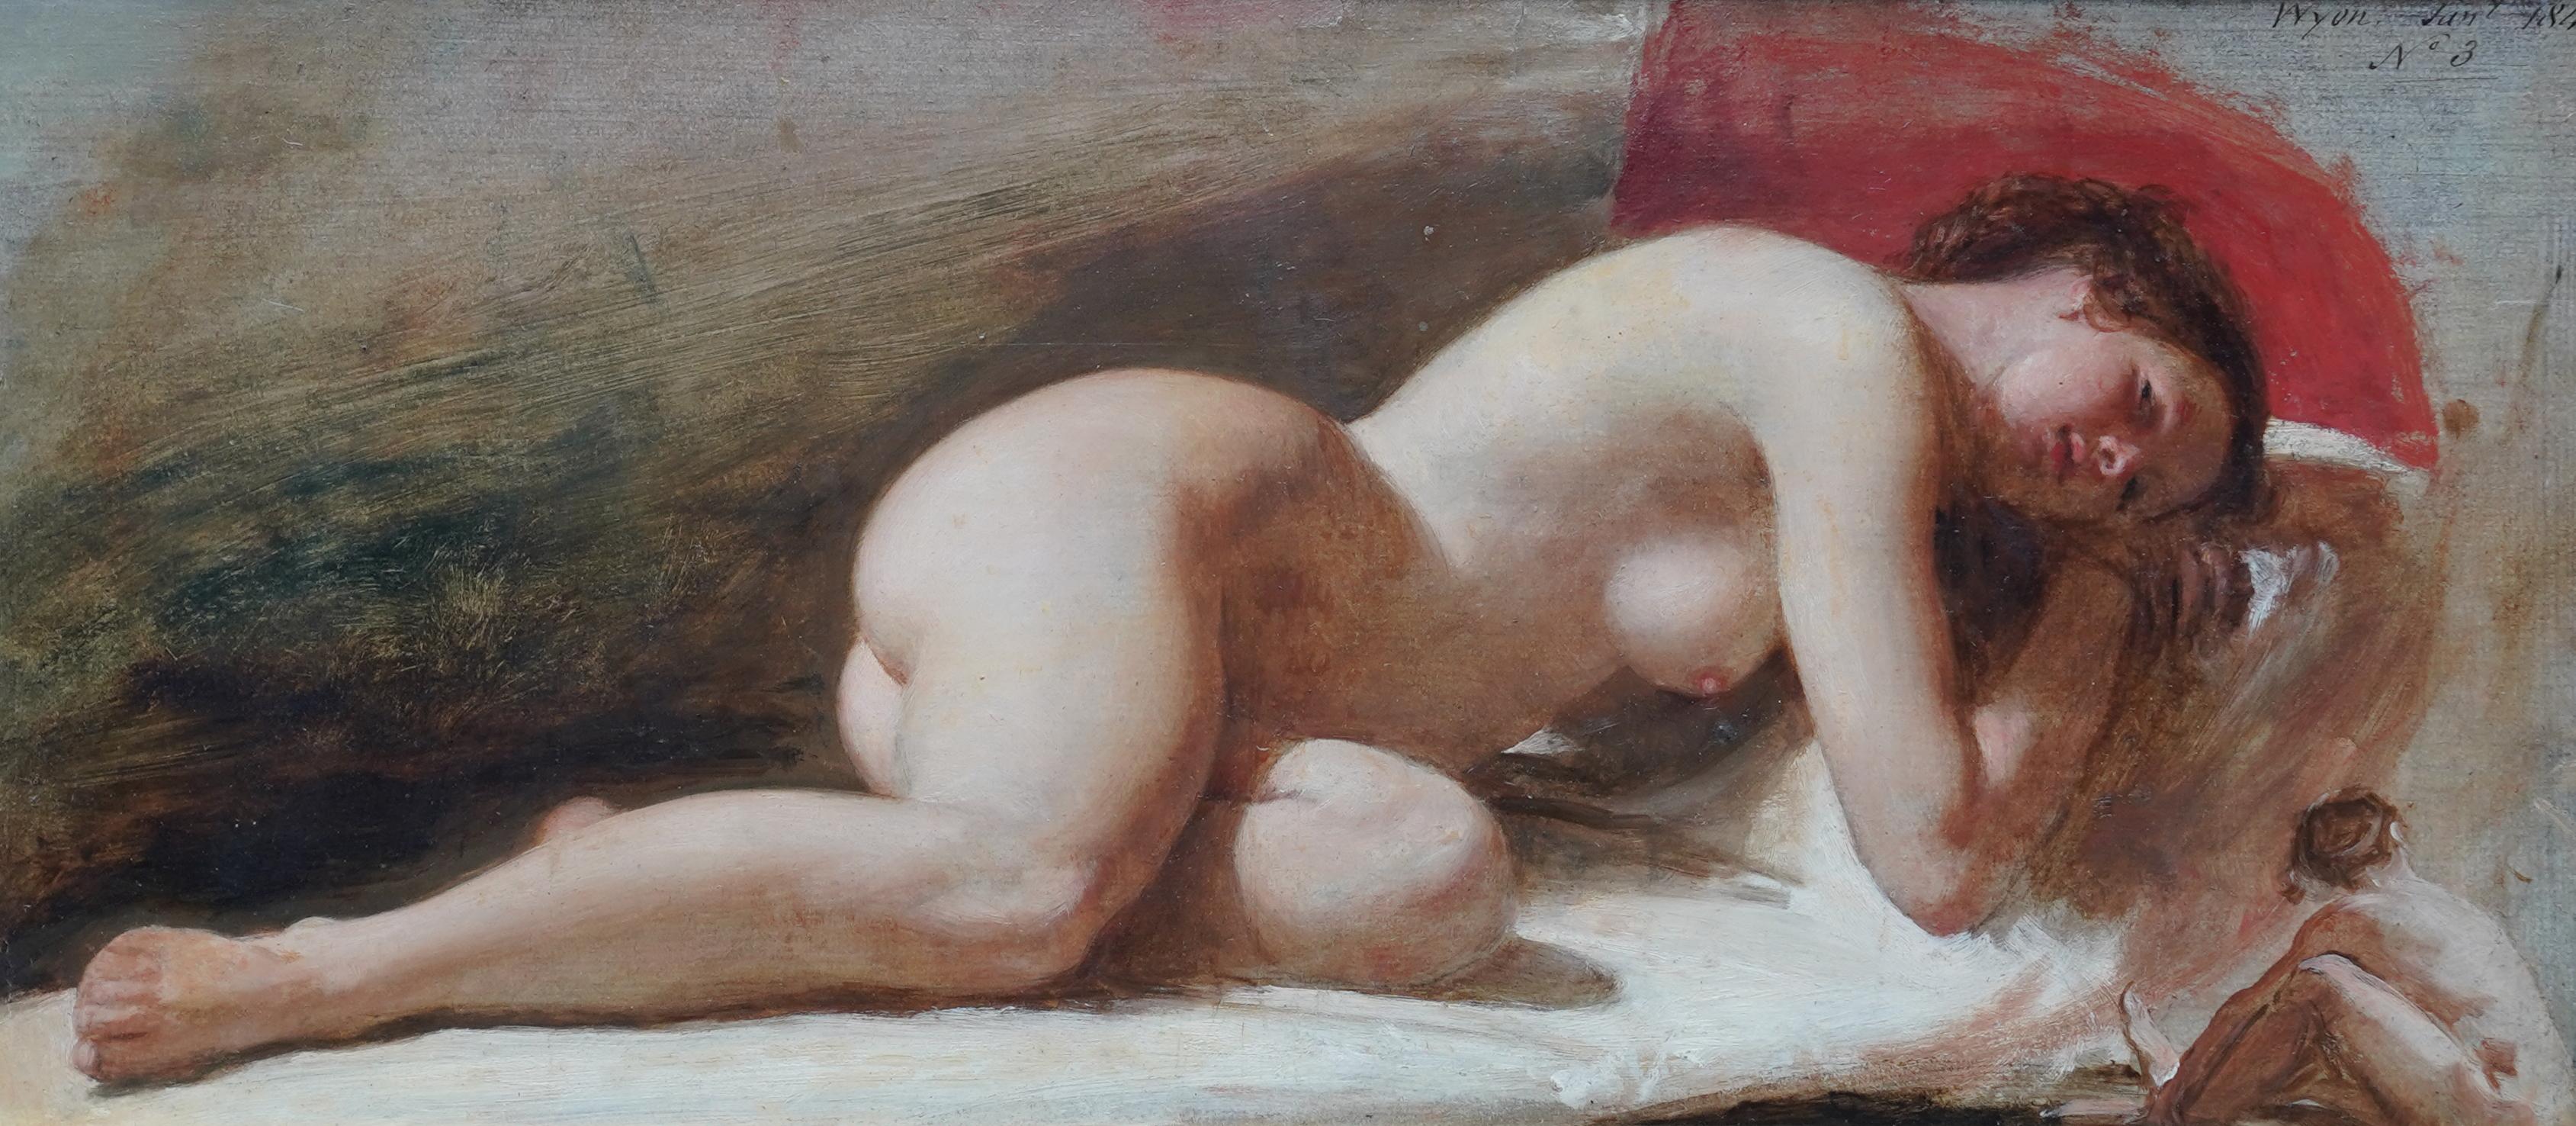 Portrait de femme nue couchée - peinture à l'huile victorienne britannique du 19e siècle - Painting de Edward William Wyon